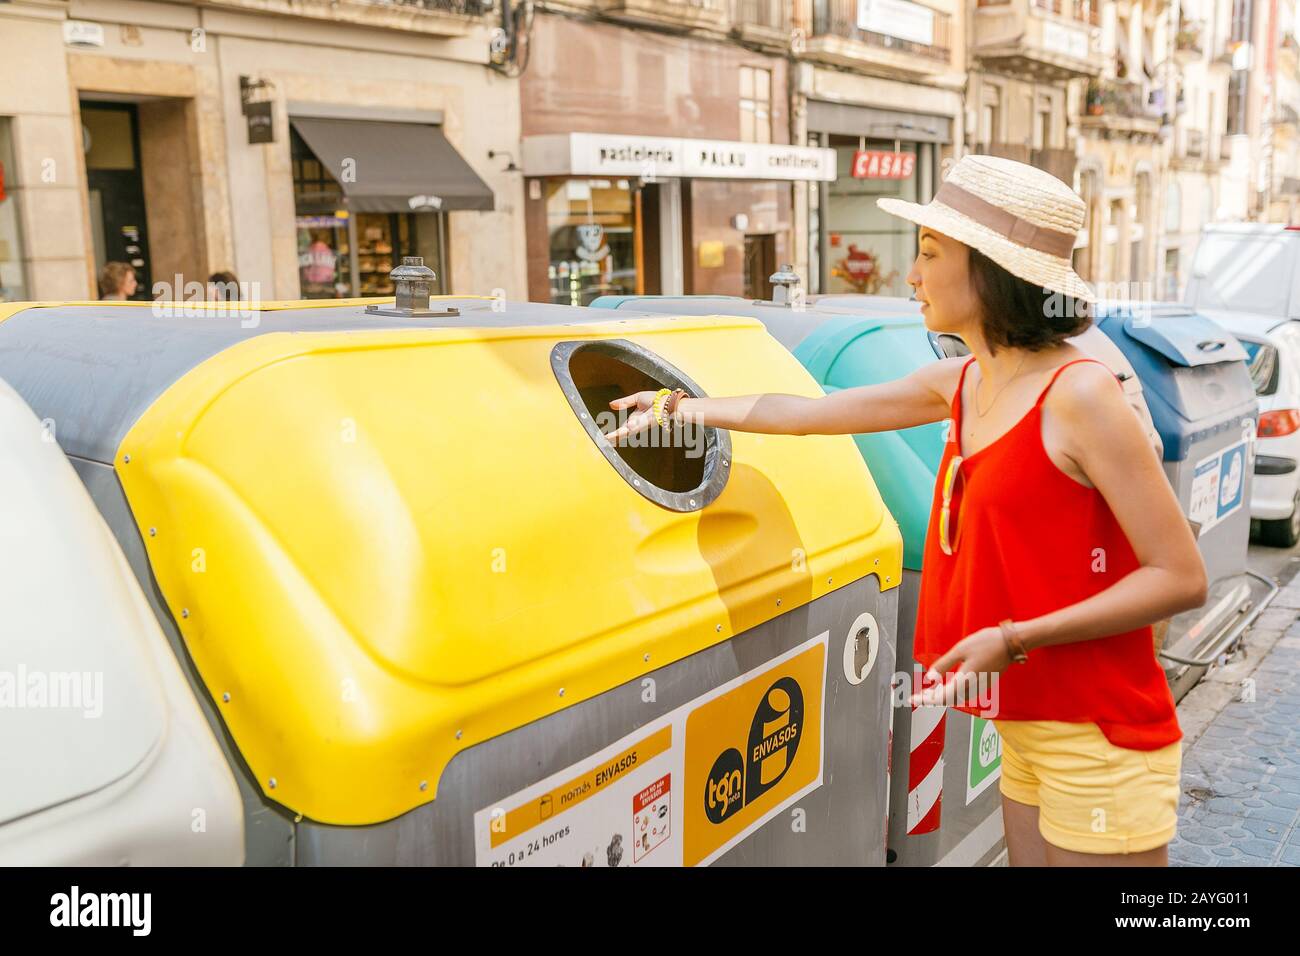 17 LUGLIO 2018, TARRAGONA, SPAGNA: Donna che getta una carta in un cestino sulla strada della città Foto Stock